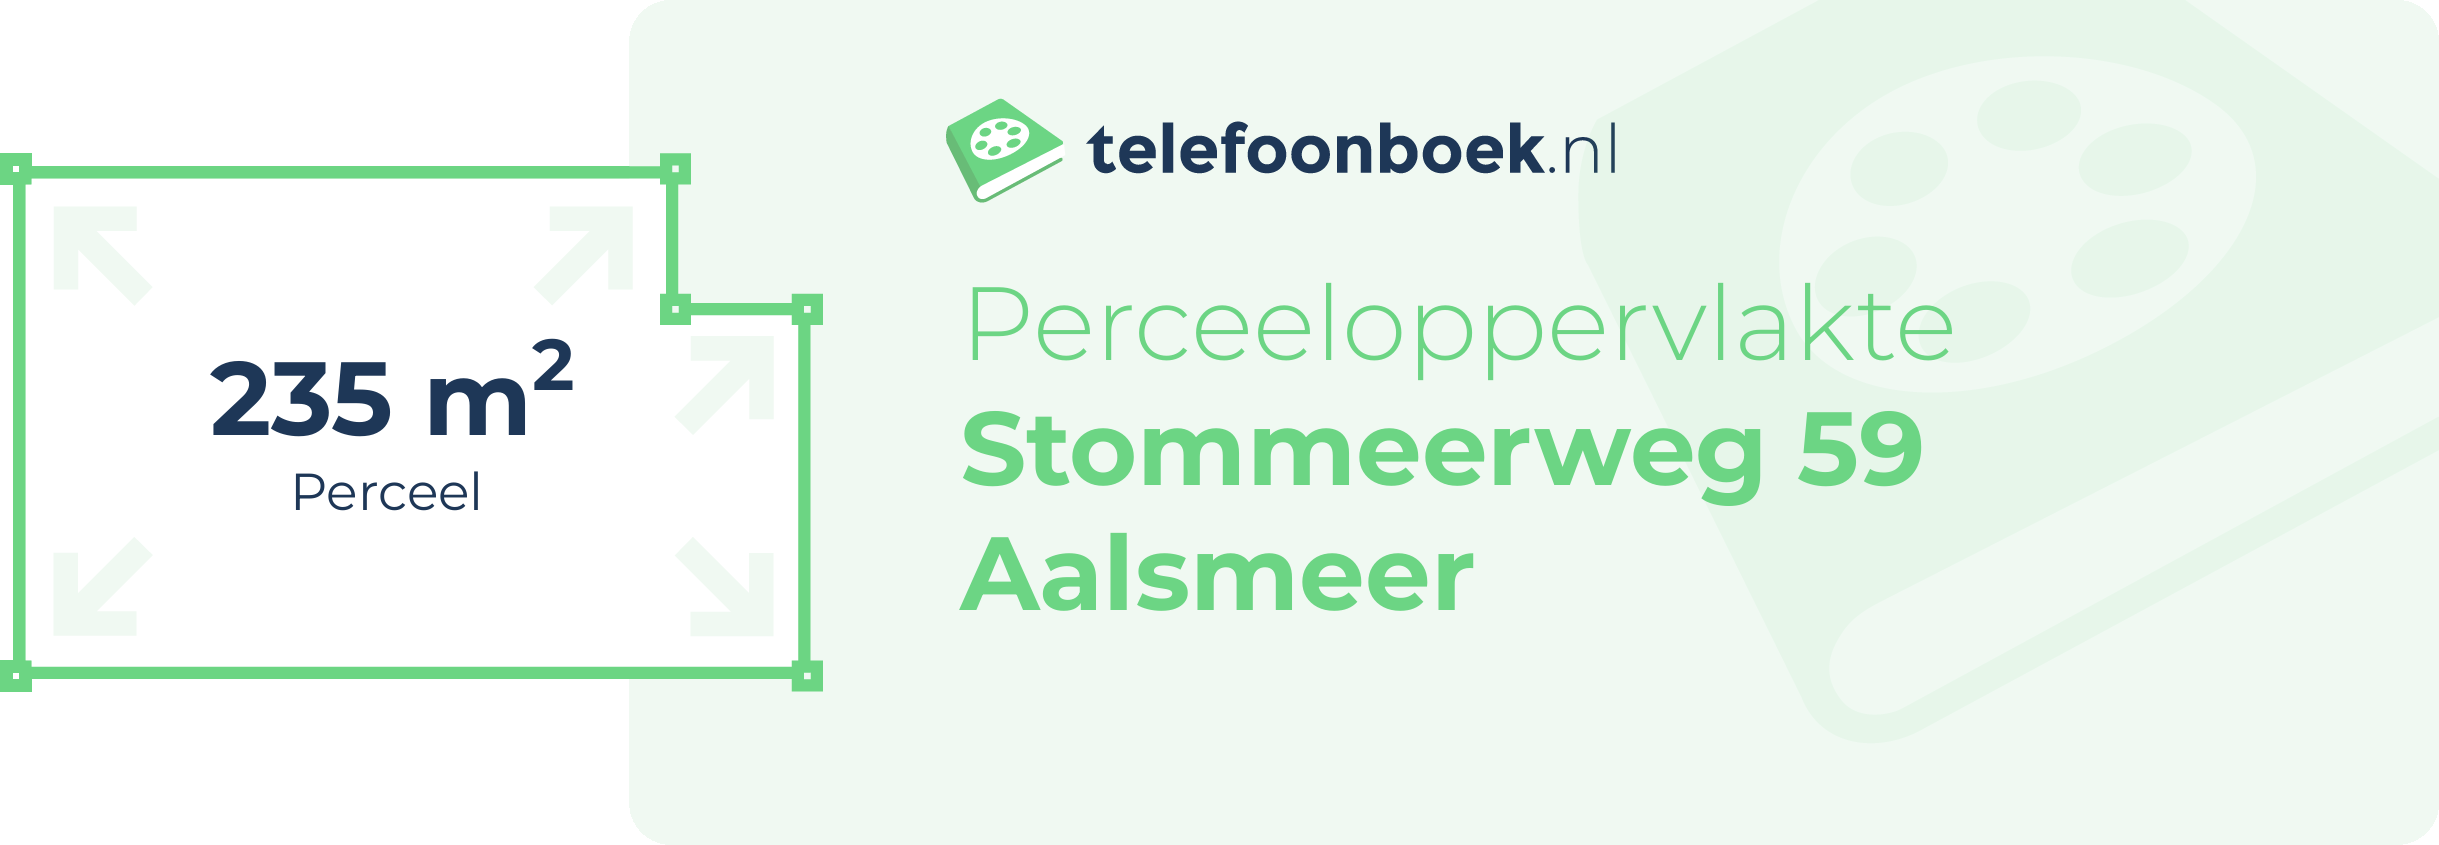 Perceeloppervlakte Stommeerweg 59 Aalsmeer